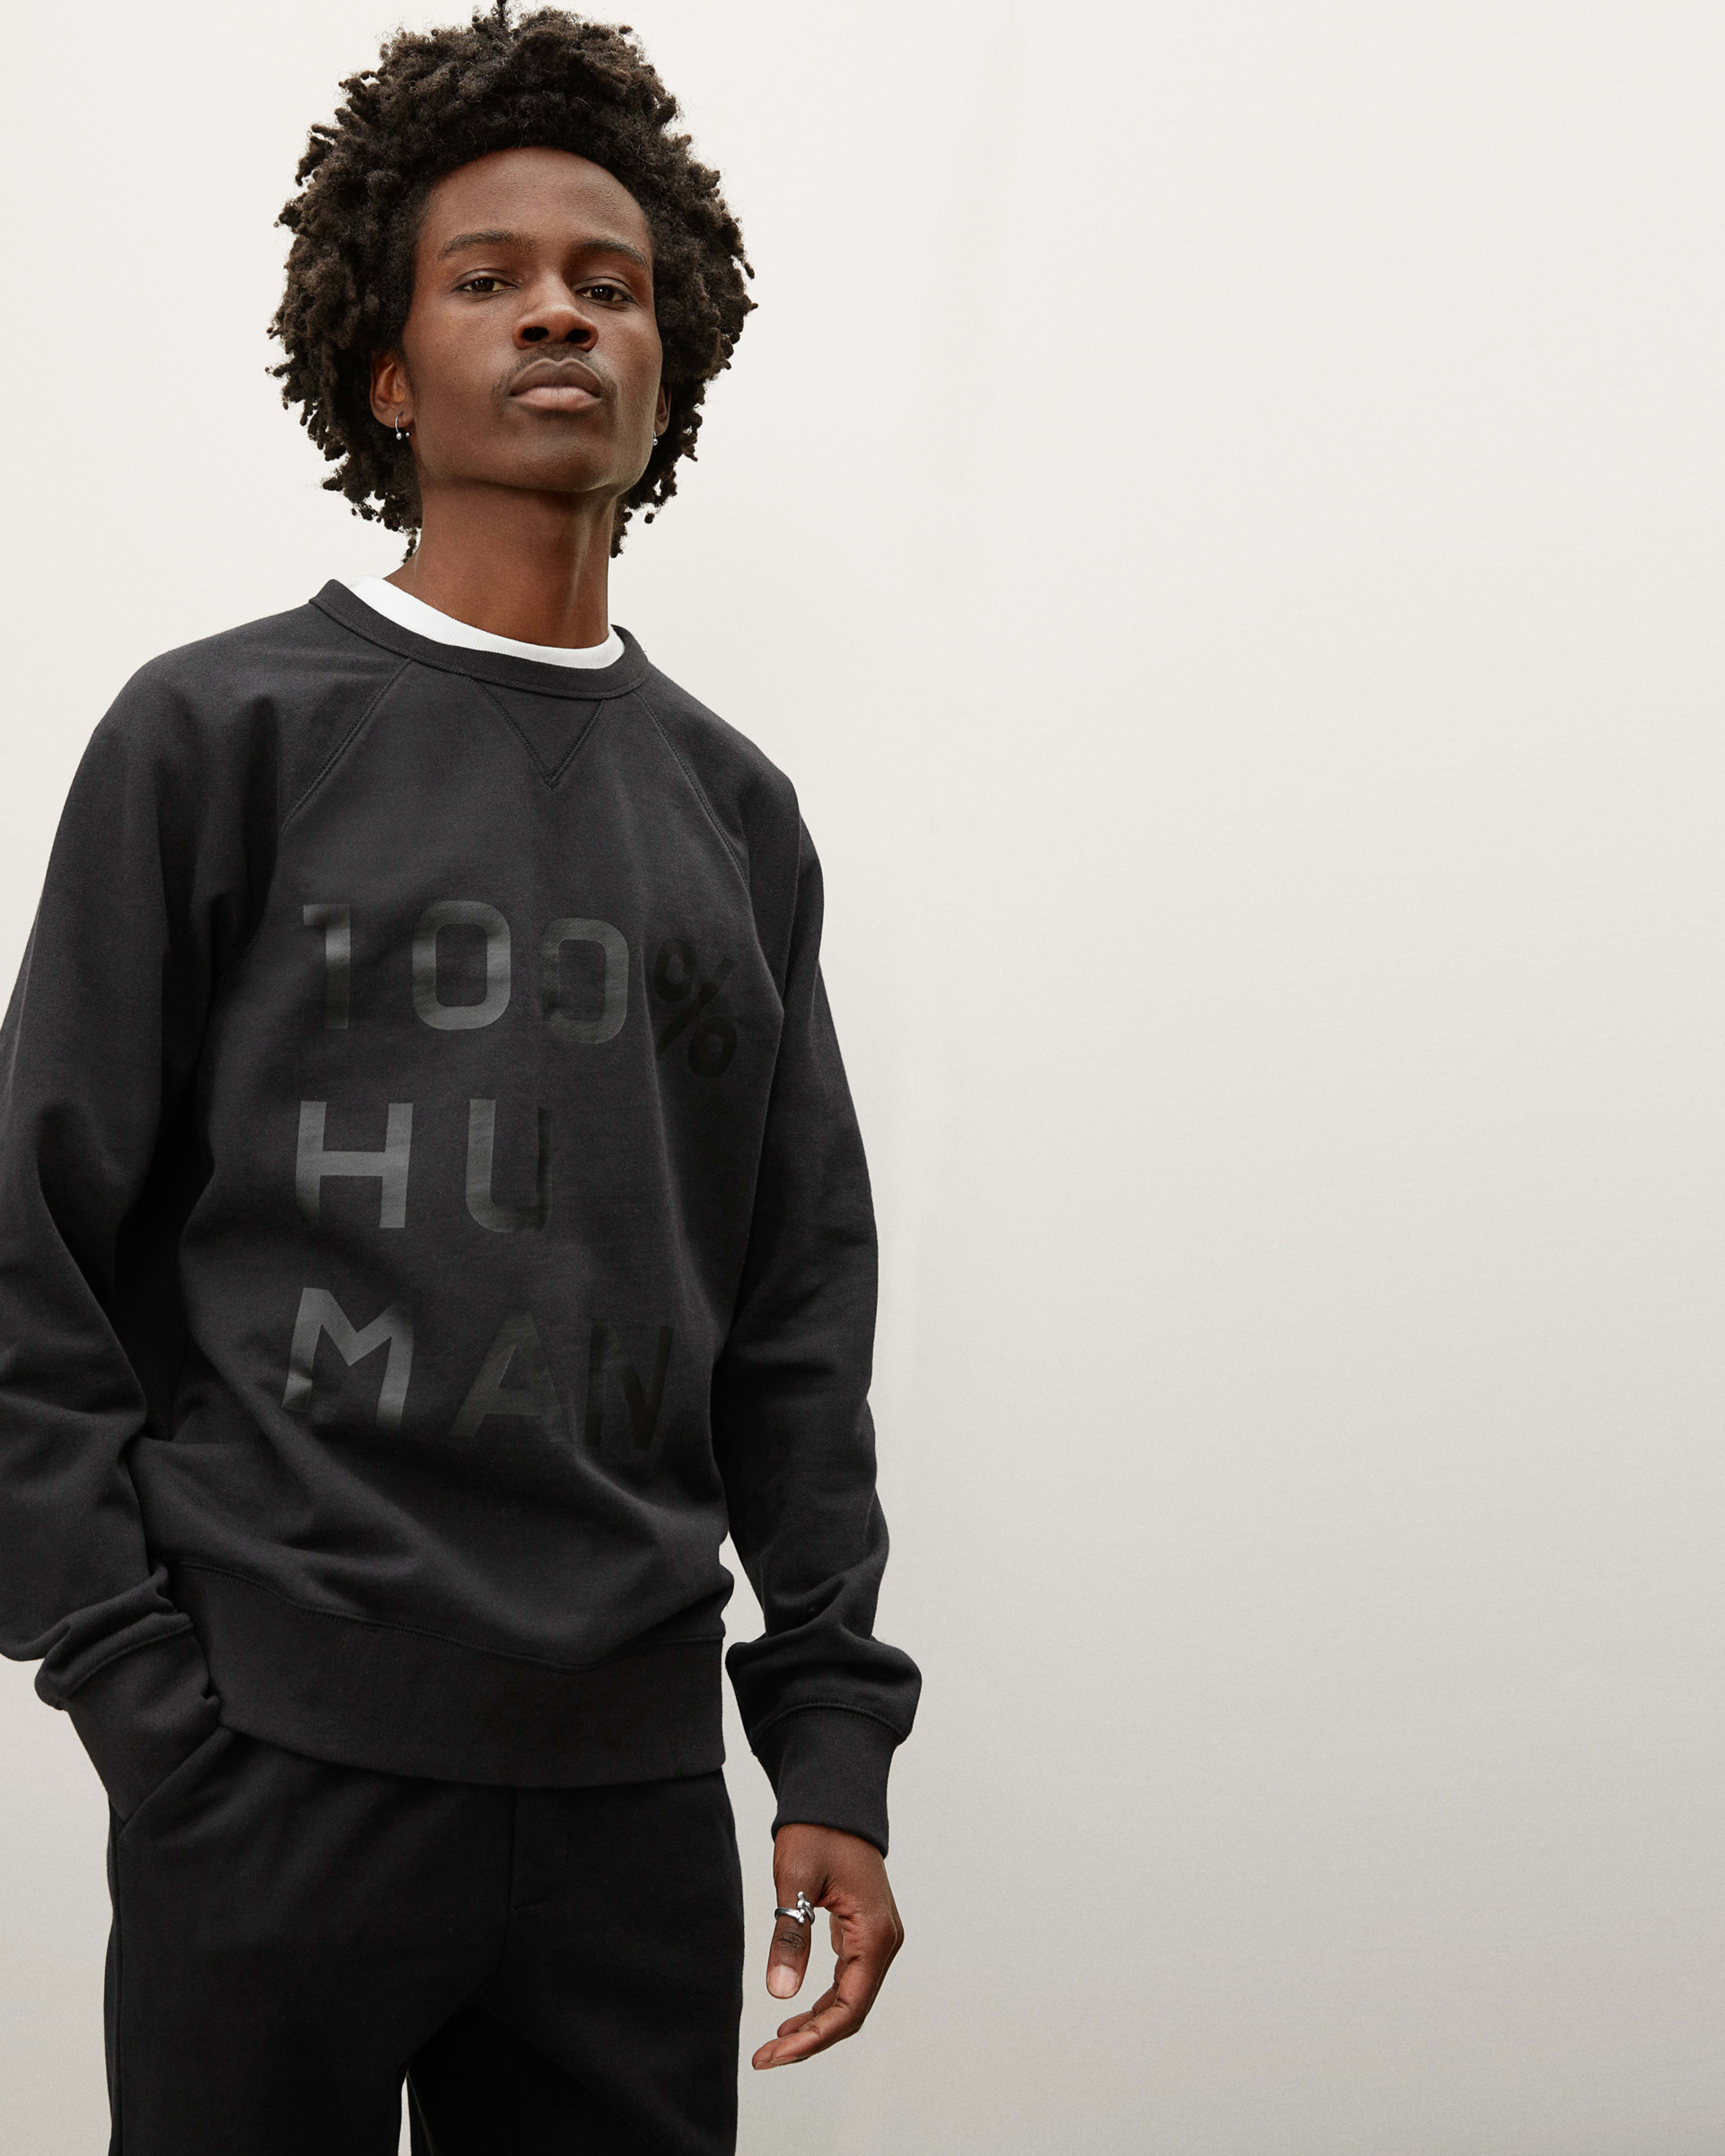 The 100% Human Typography Sweatshirt Black – Everlane